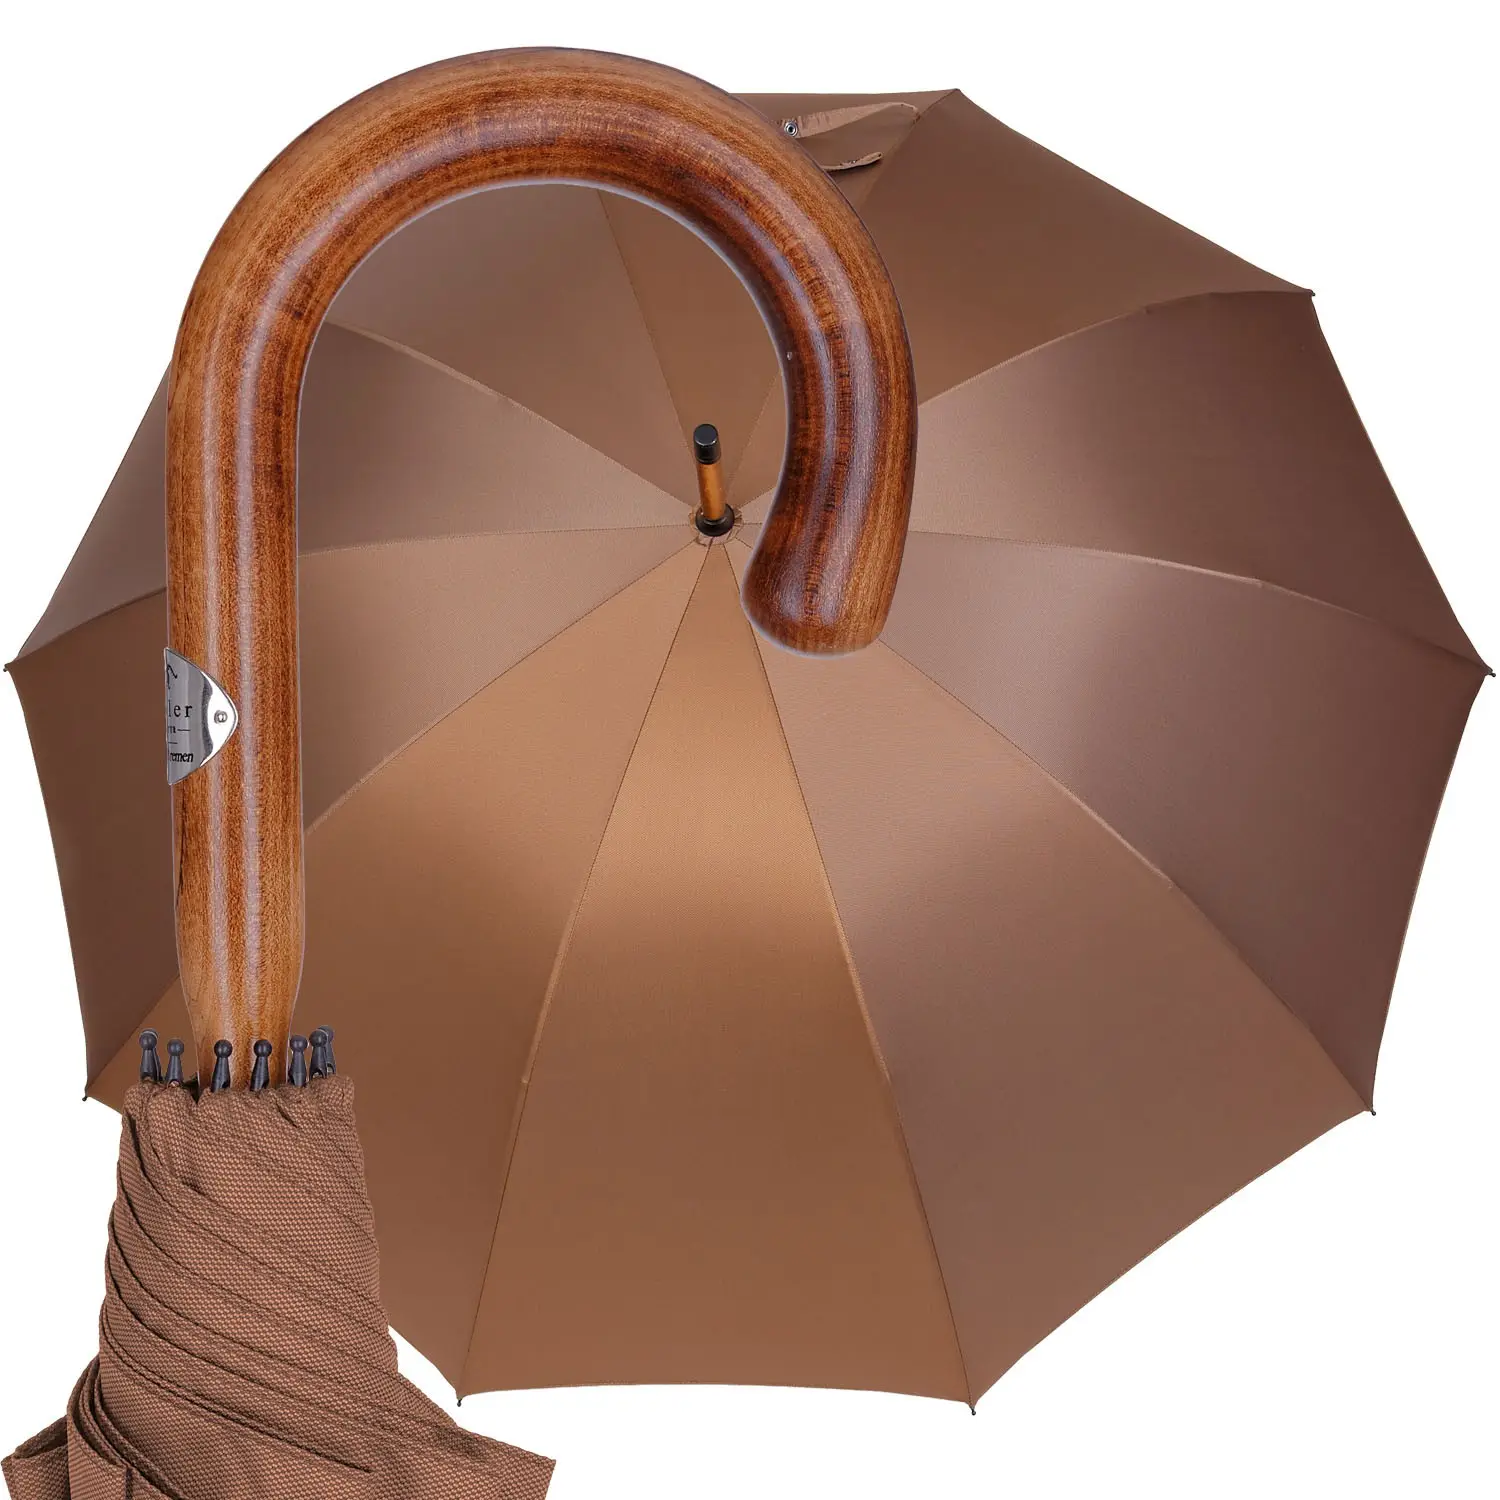 Hotel Werbung Regen schirm klassisch kurve J Holz-Schaft-Griff luxuriöser Stick hölzernes Geschenk-Regenschirm für draußen